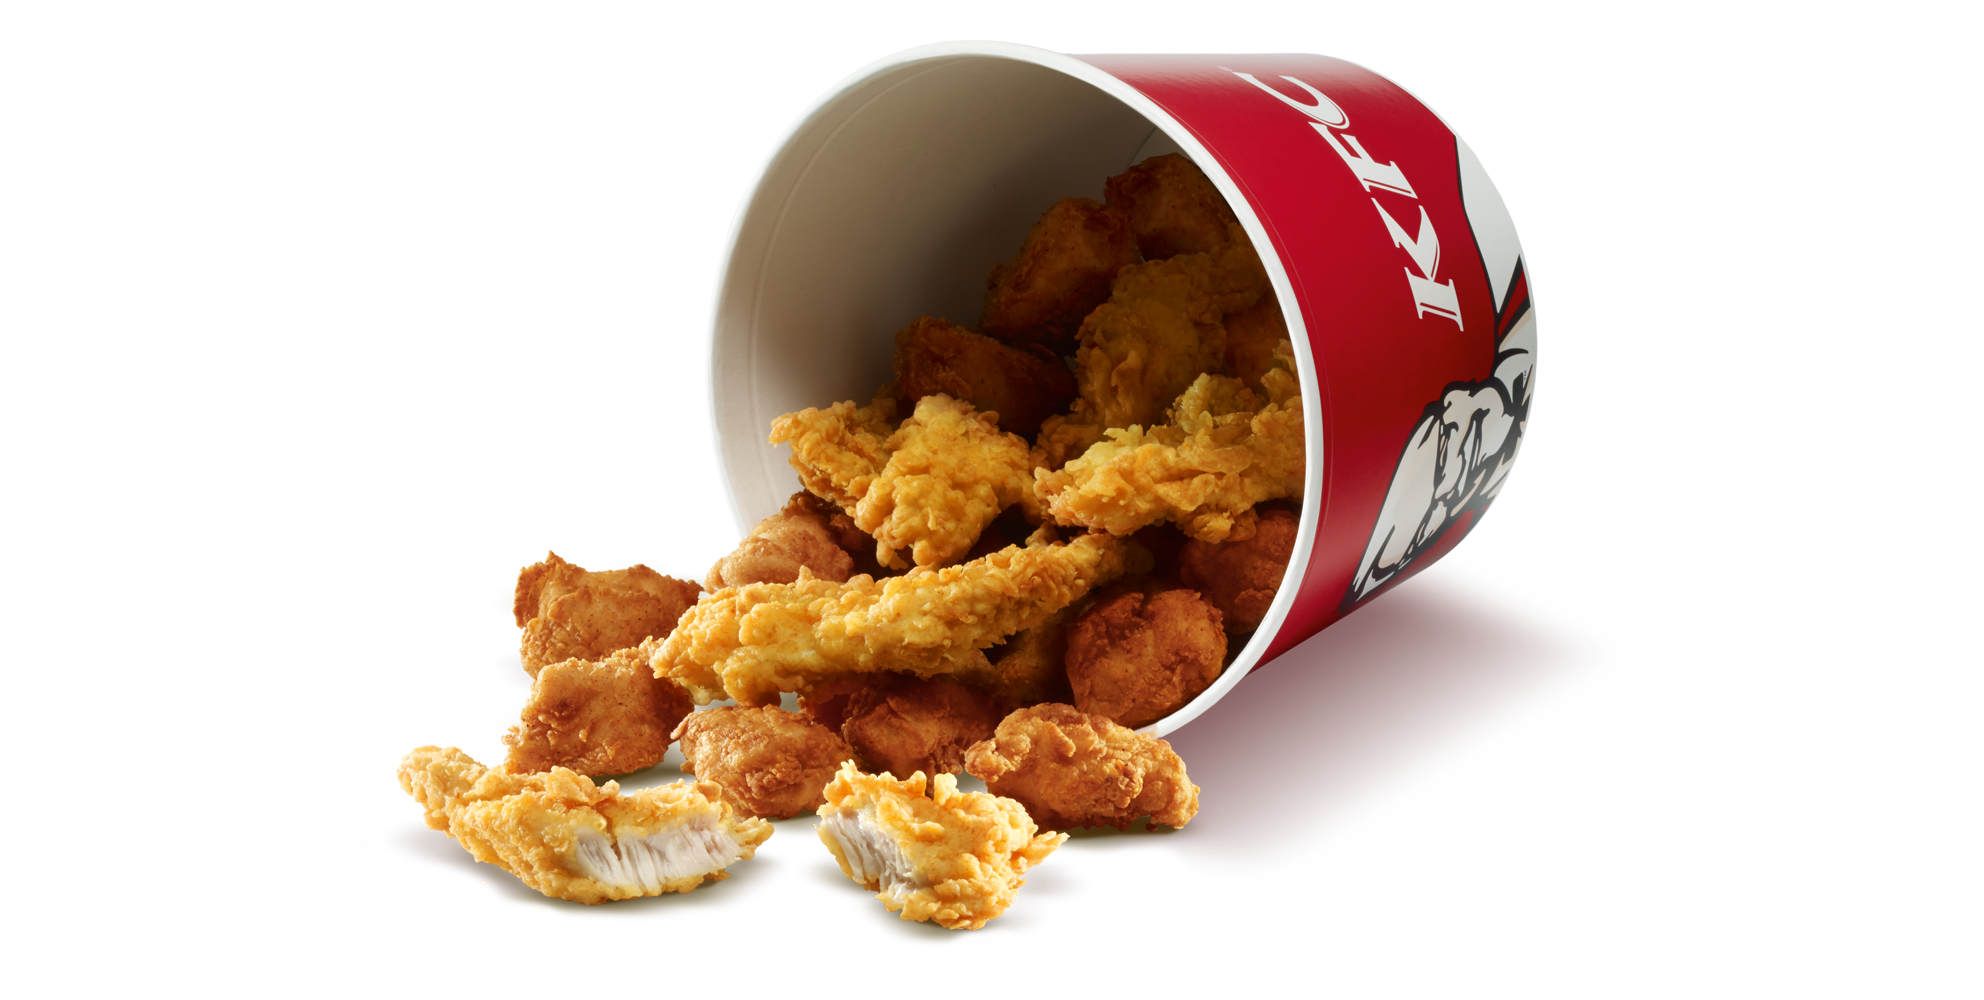 KFC kovası